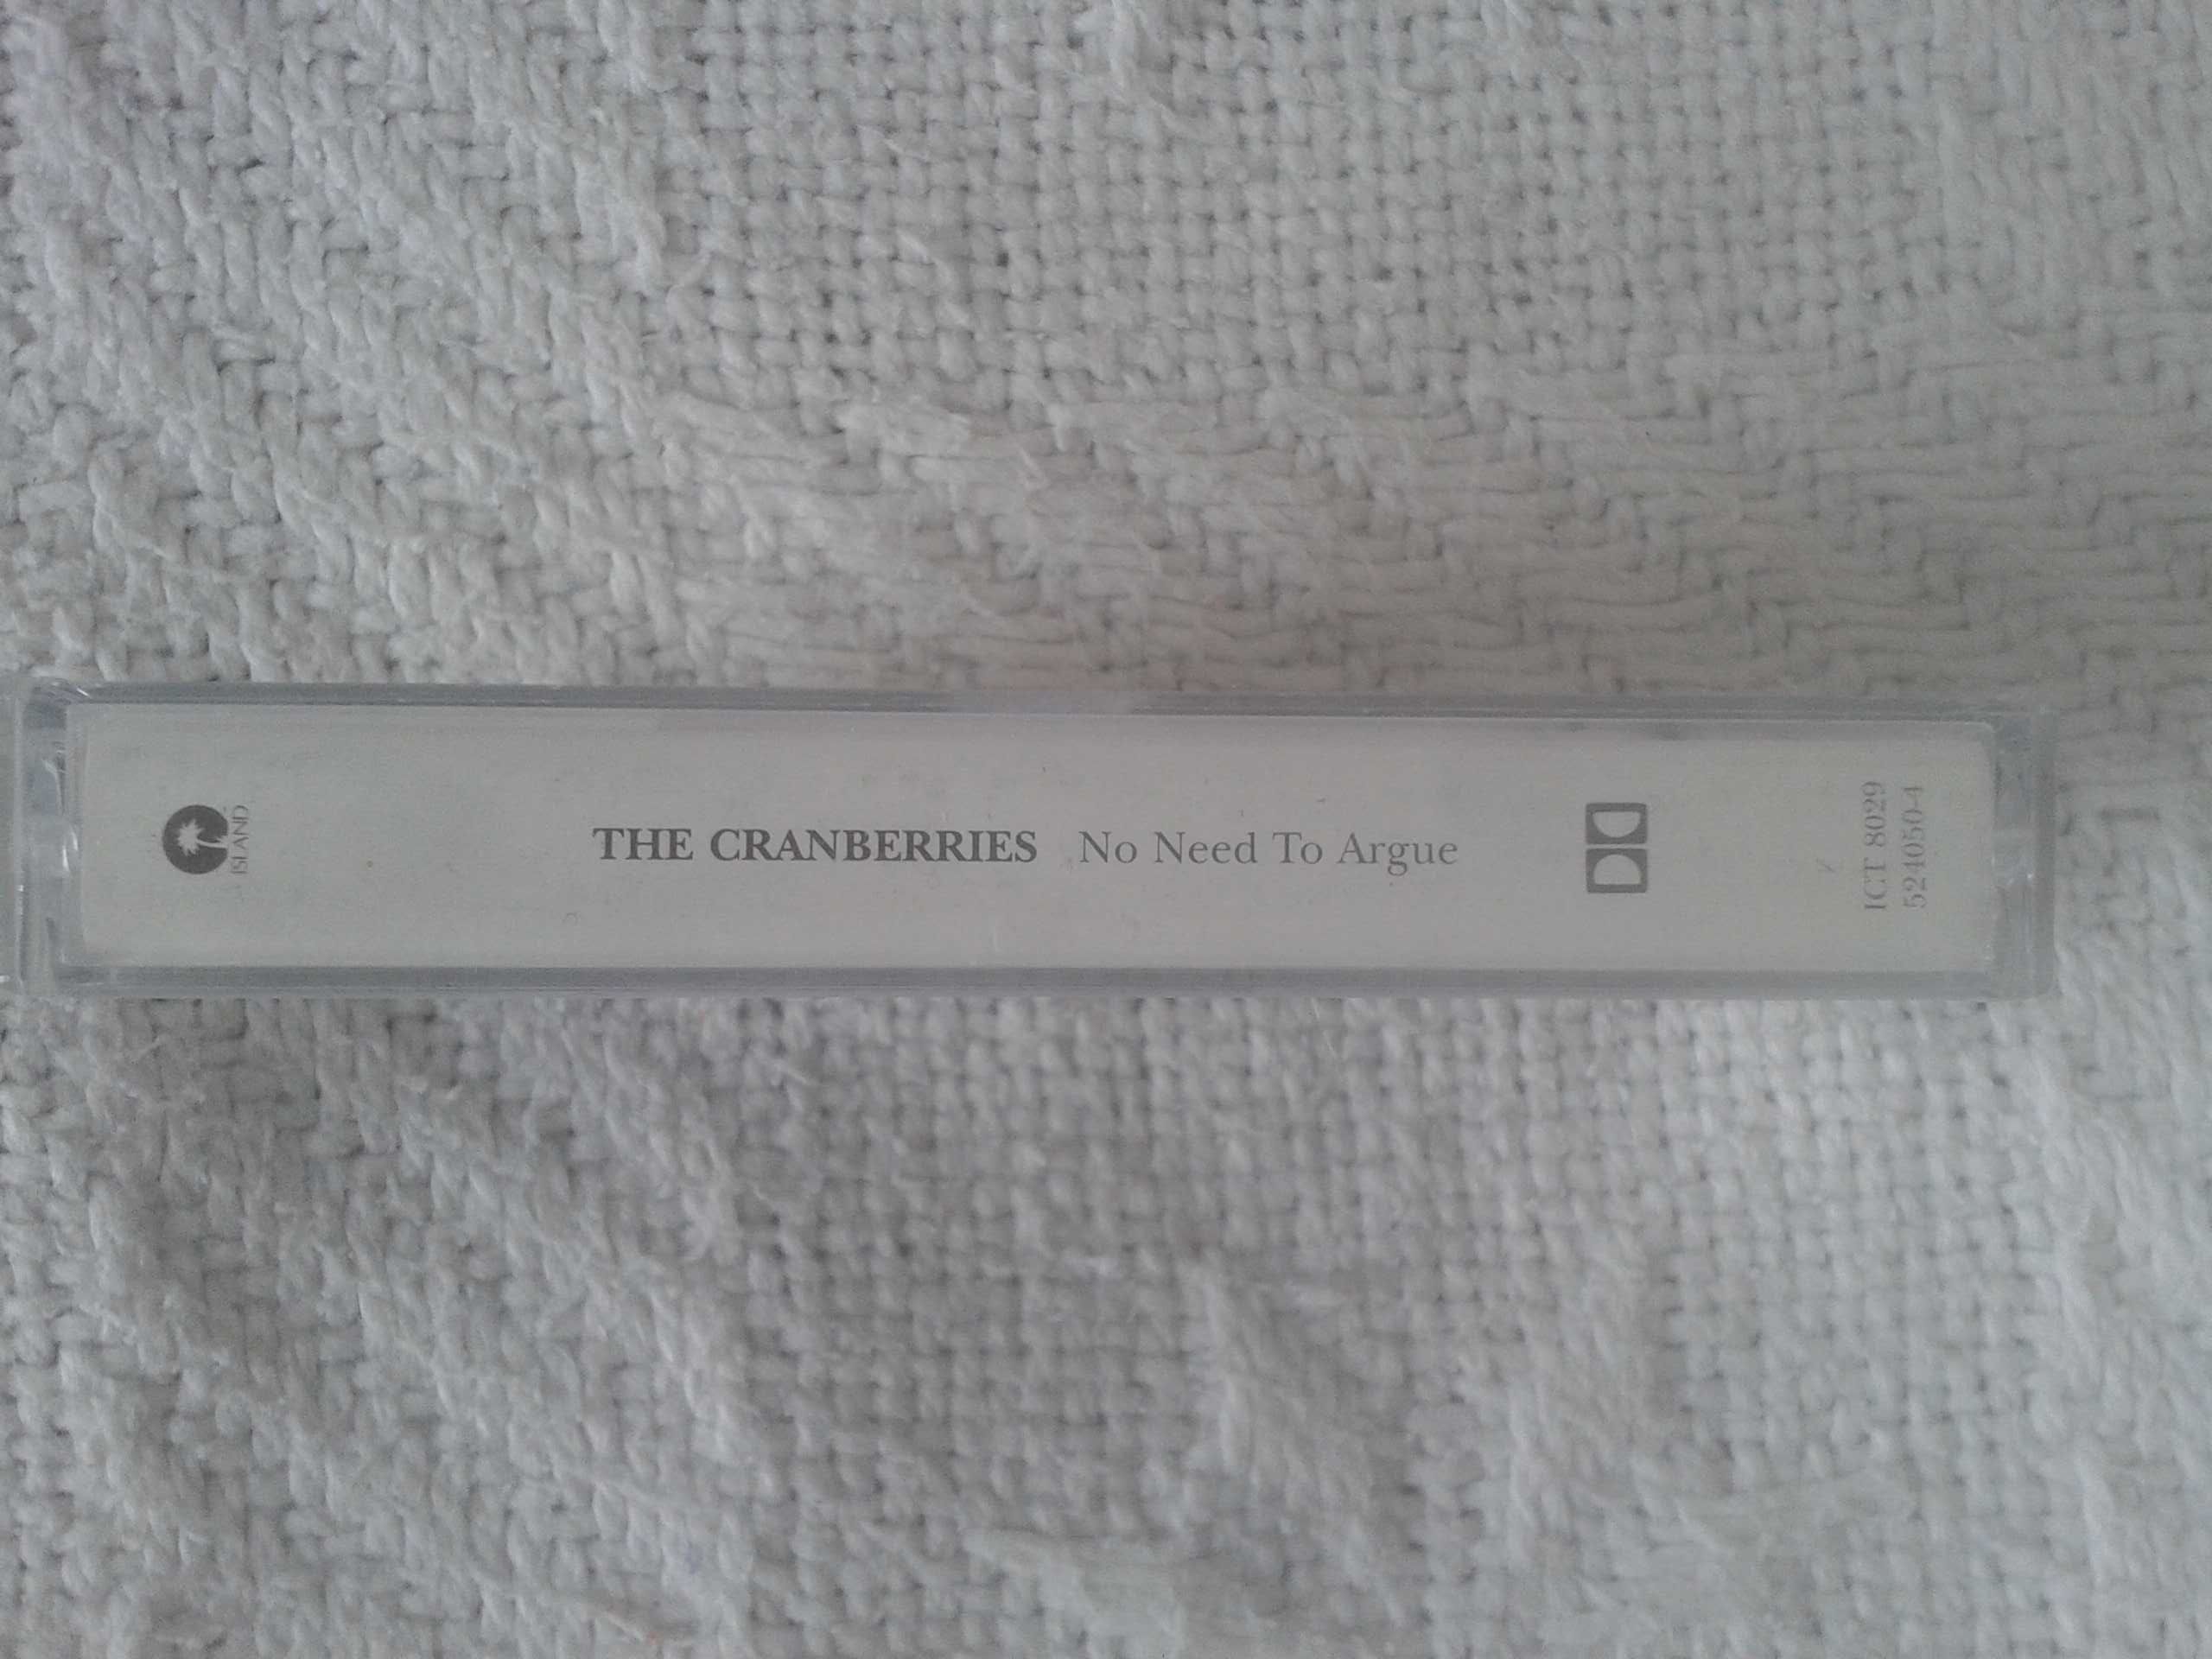 Sprzedam oryginalną kasetę magnetofonową zespołu The Cranberries